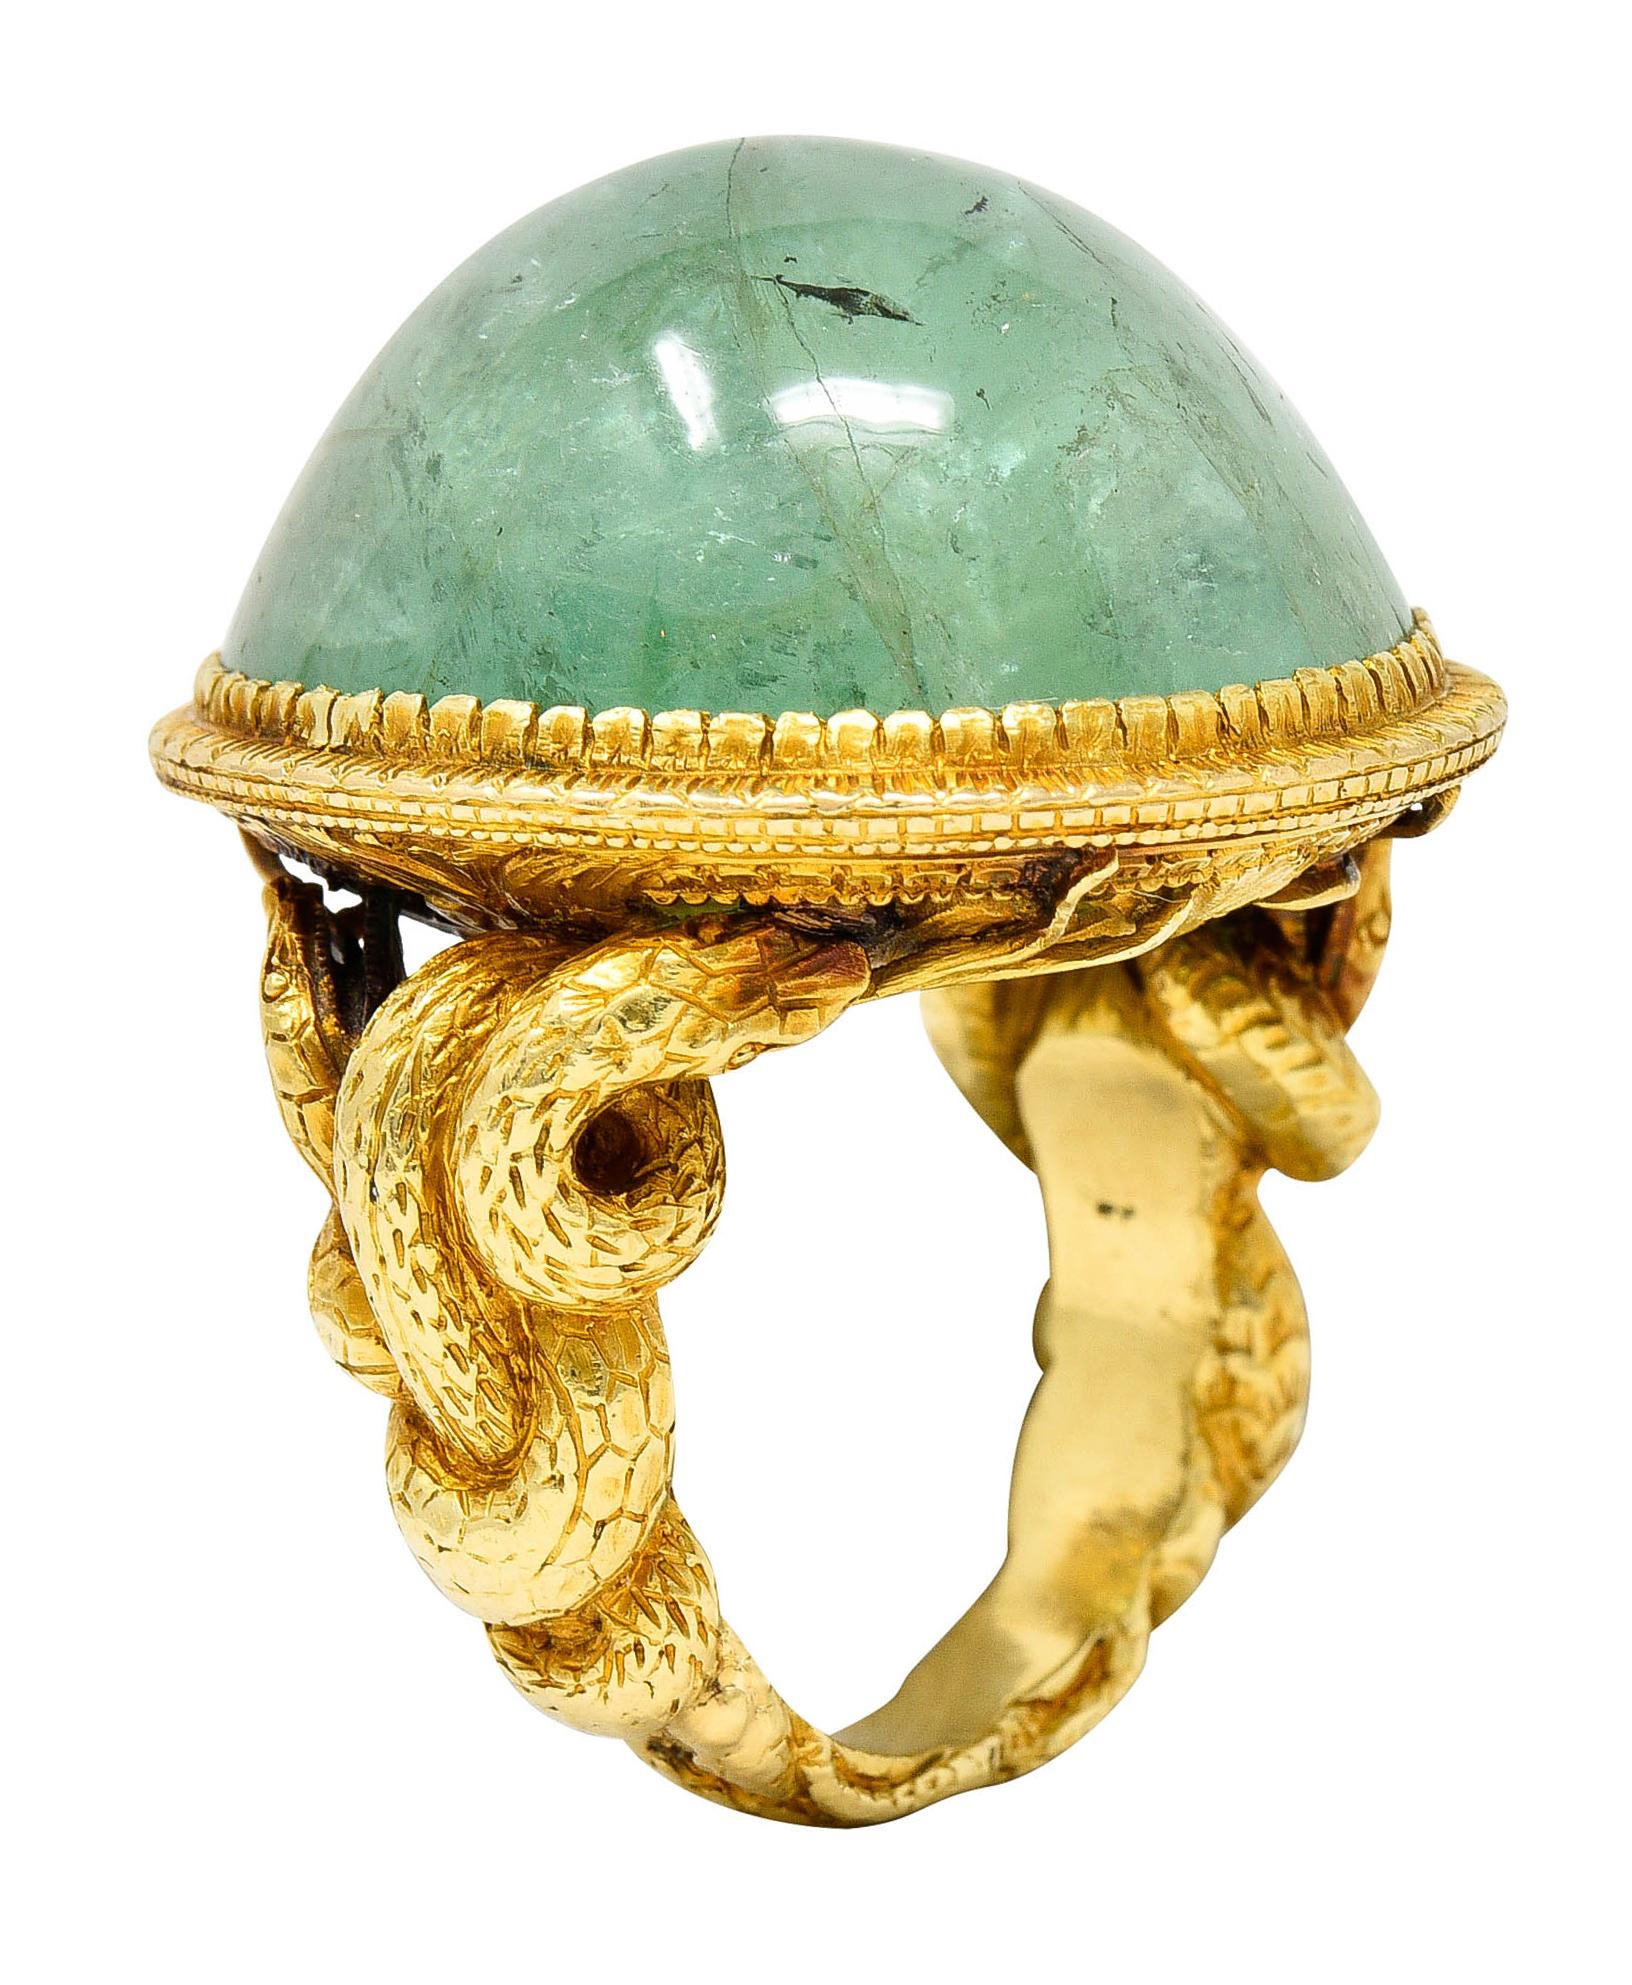 Substantial Emerald 22 Karat Gold Snake Gemstone Ring 6